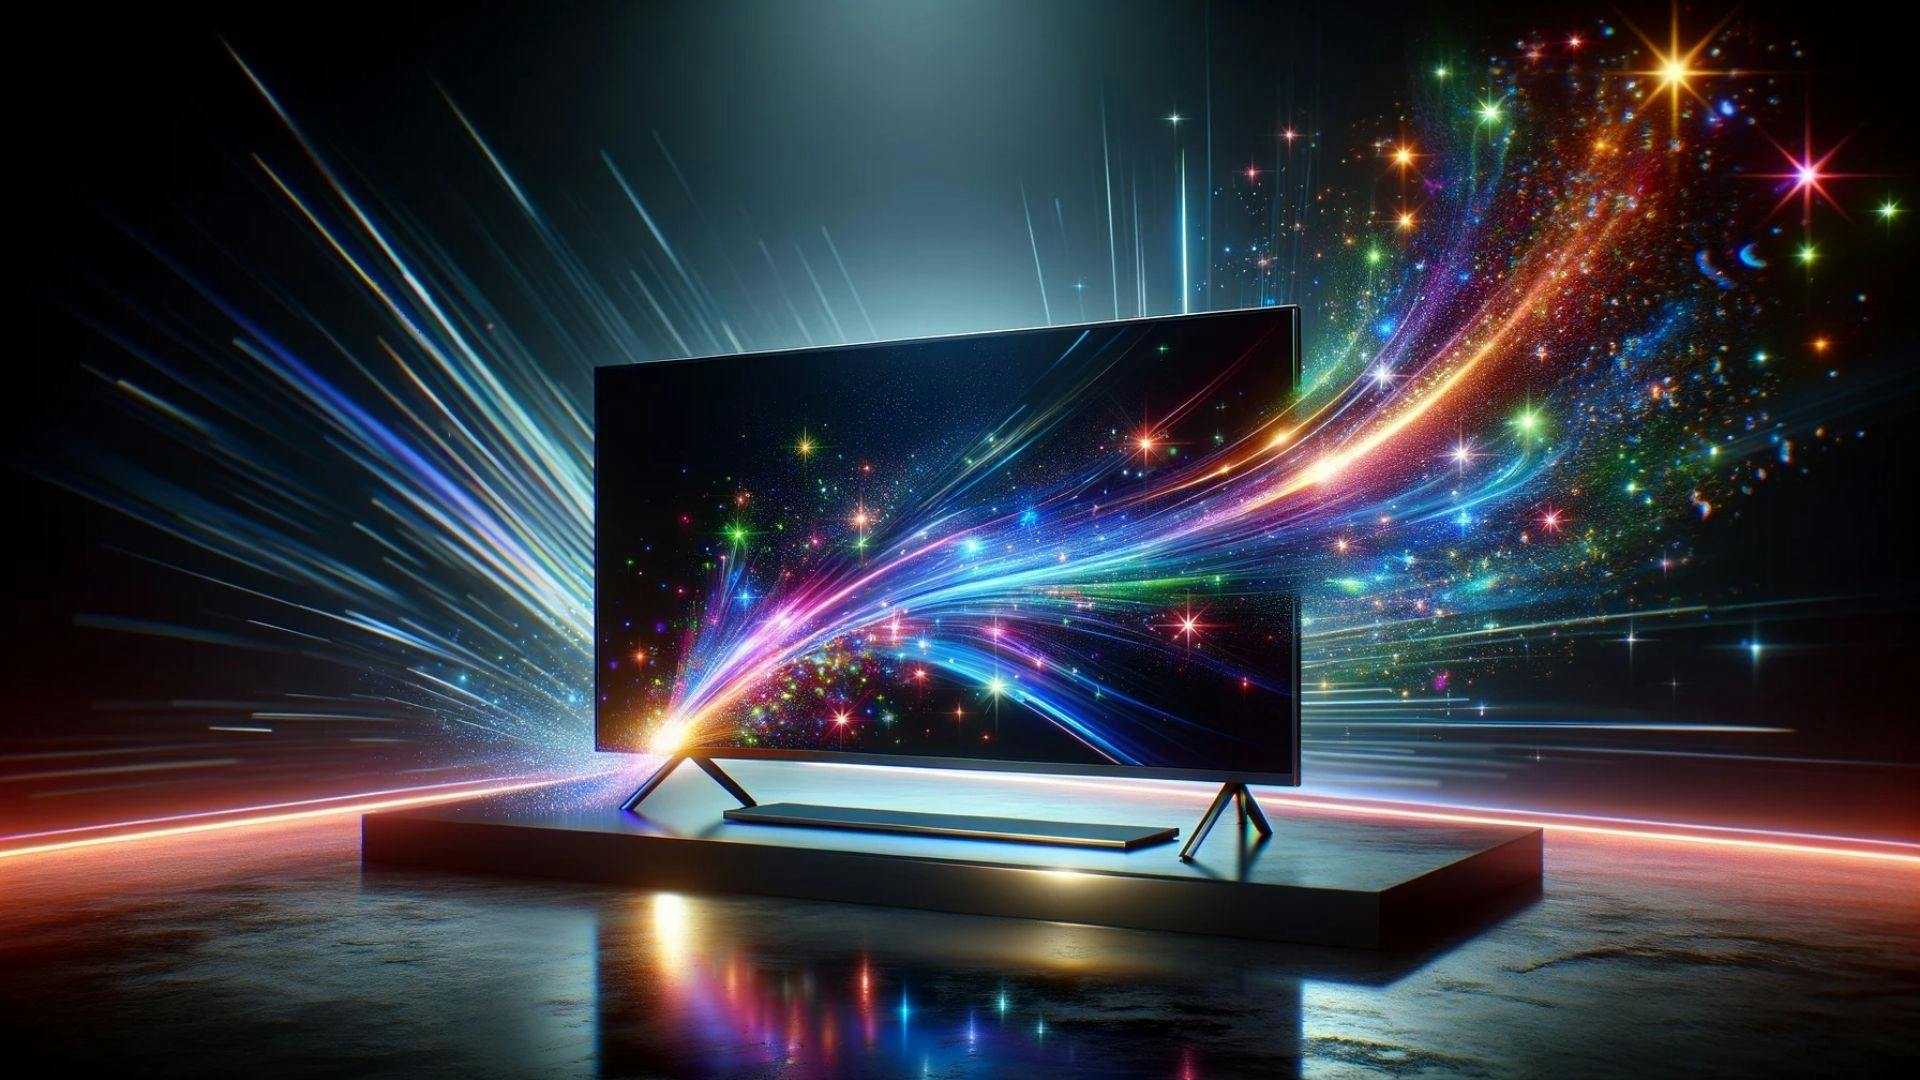 photo d’une télévision intelligente moderne et élégante posée sur un support, éclairée par des effets lumineux dynamiques et colorés qui suggèrent une technologie avancée et une ambiance futuriste